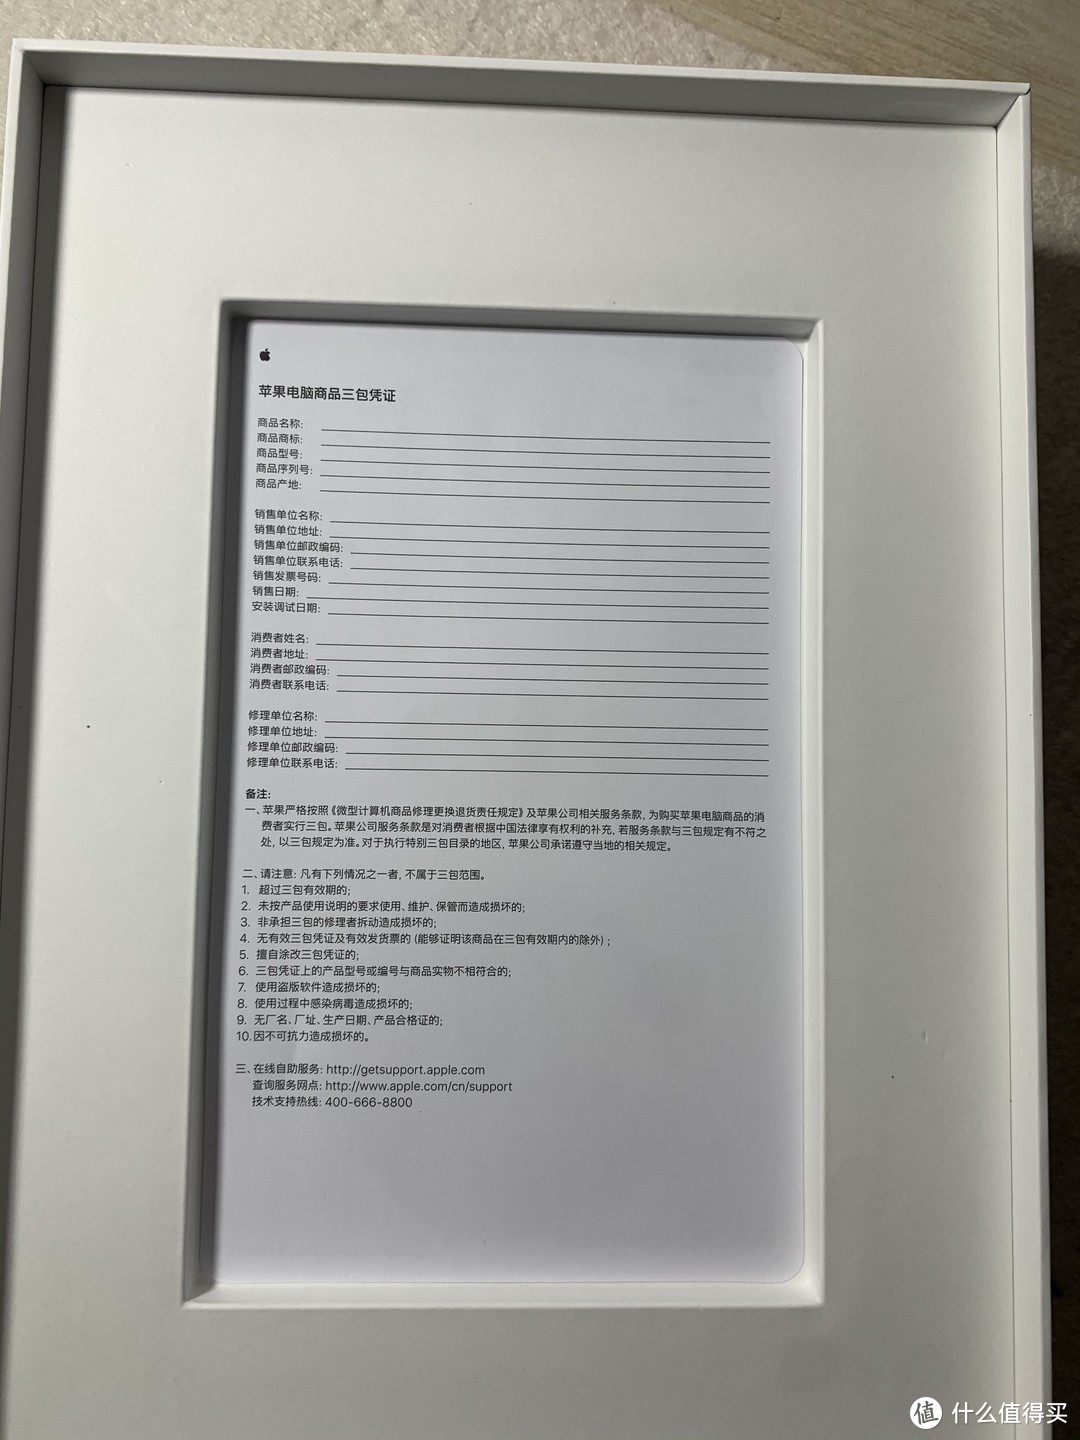 网课学习首选——iPad第8代10.2英寸开箱晒单